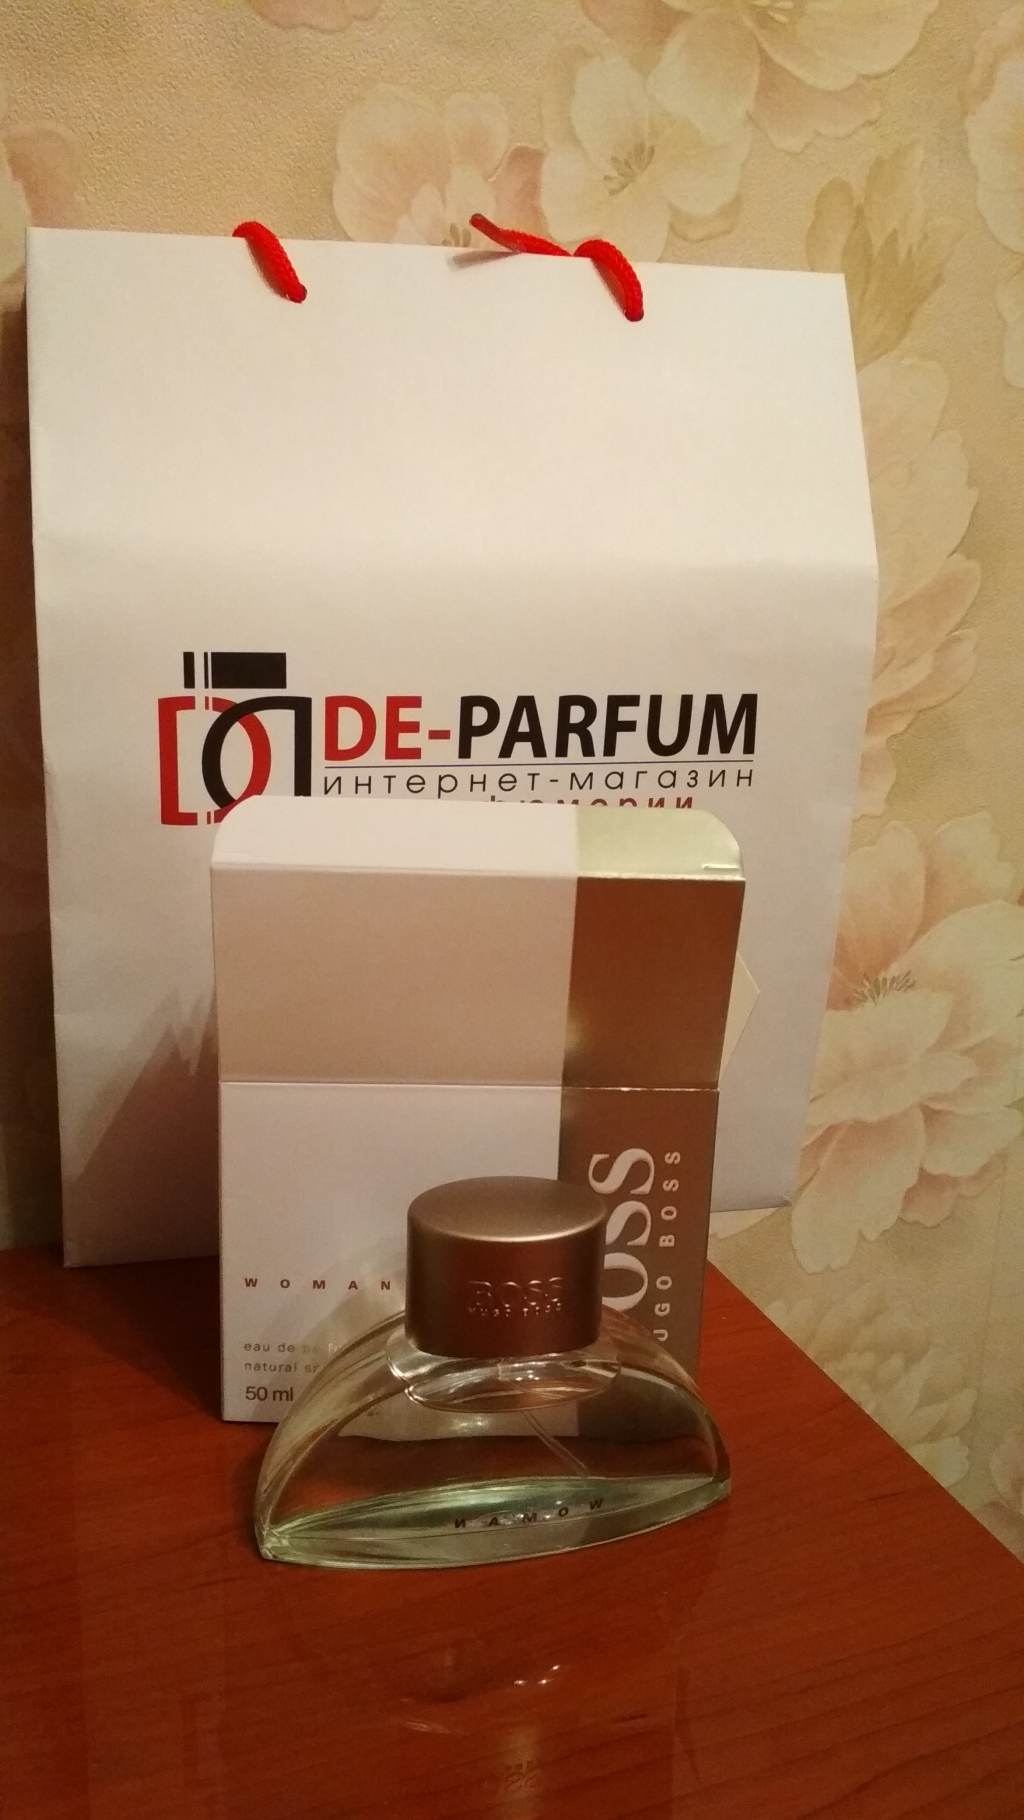 De-parfum - Хороший магазин